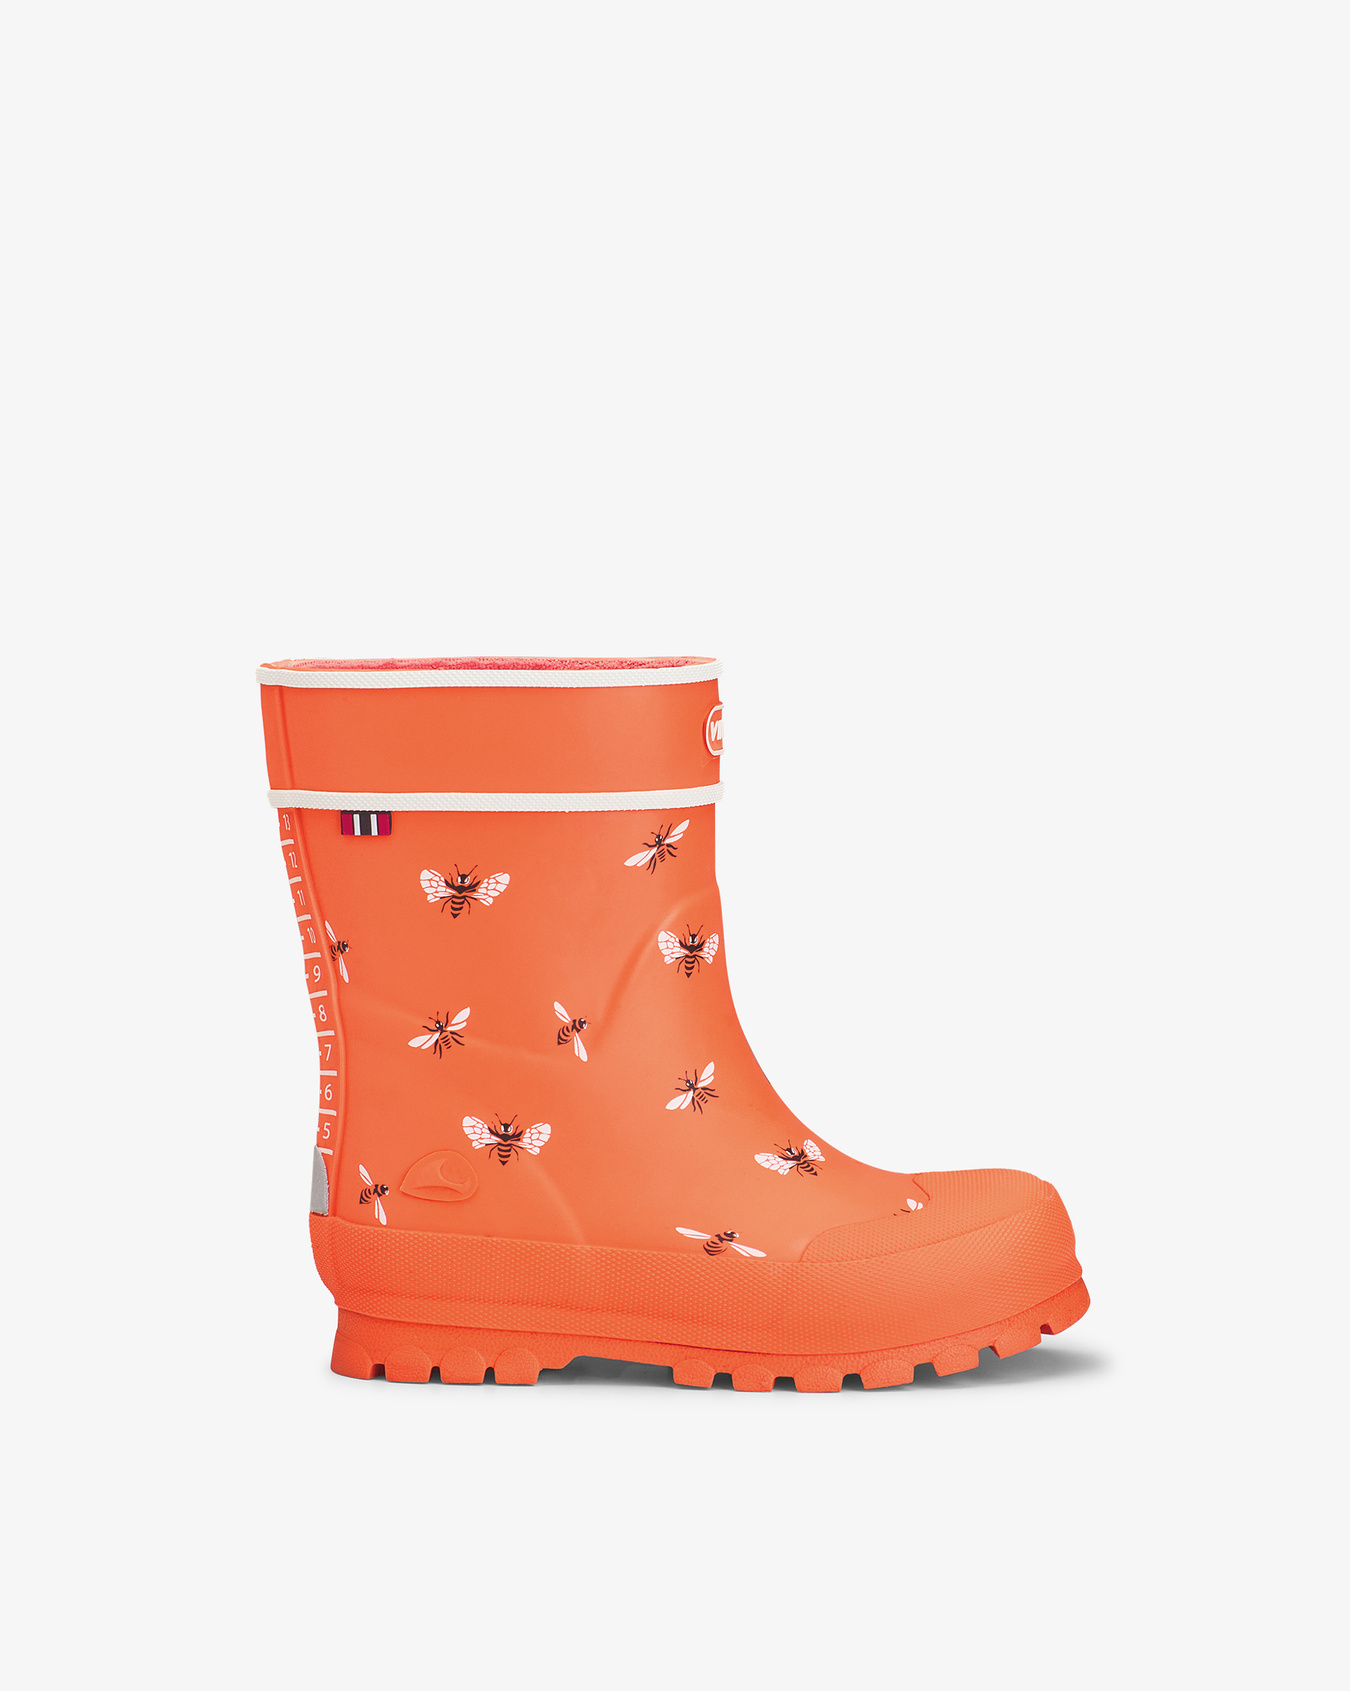 Alv Jolly Orange/White Rubber Boot